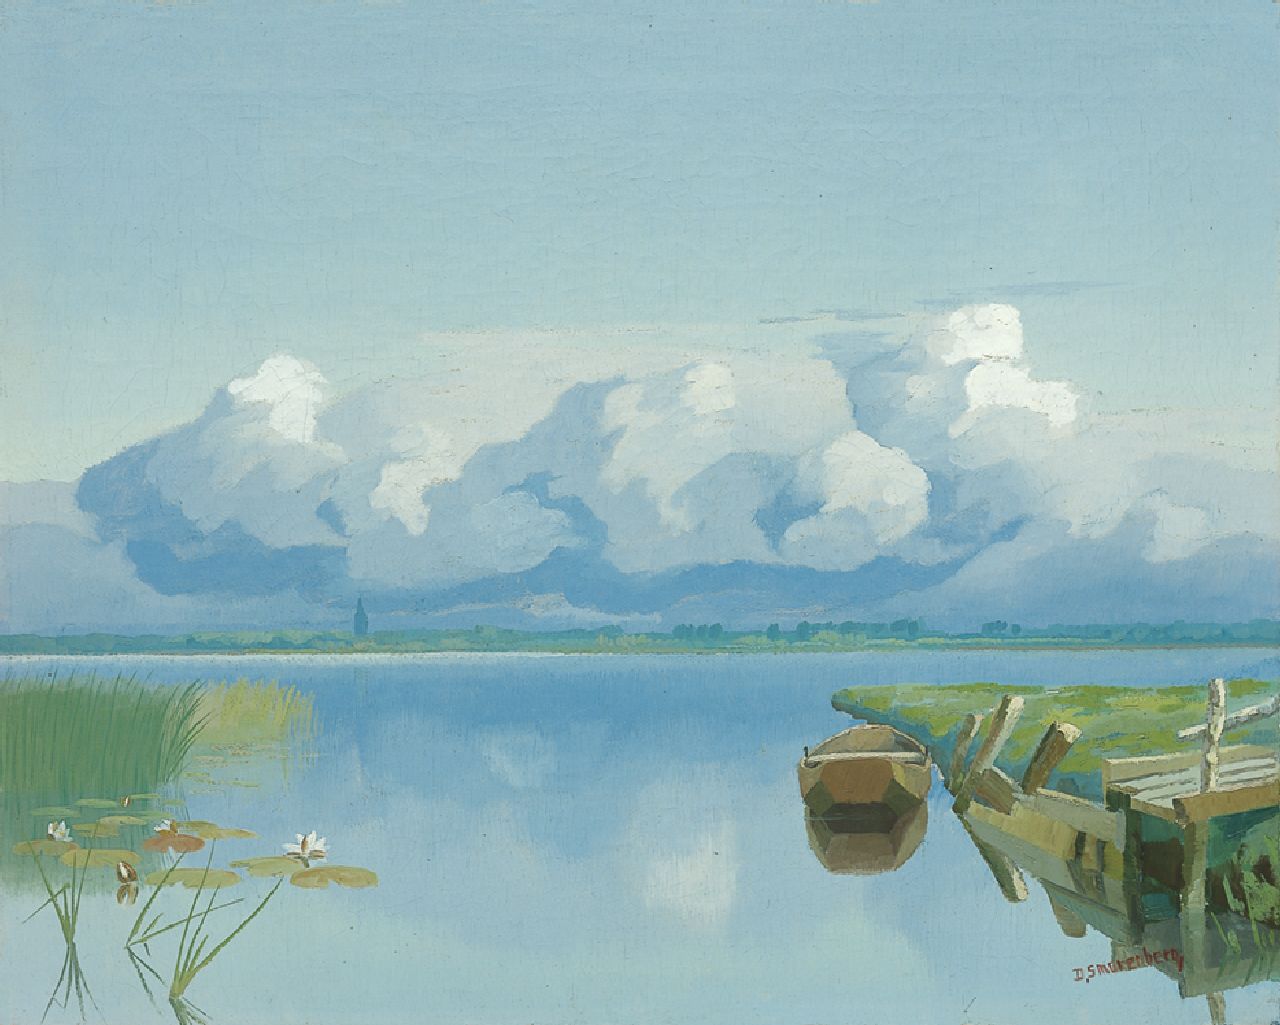 Smorenberg D.  | Dirk Smorenberg, The Loosdrechtse Plassen in summer, oil on canvas 40.2 x 50.0 cm, signed l.r.